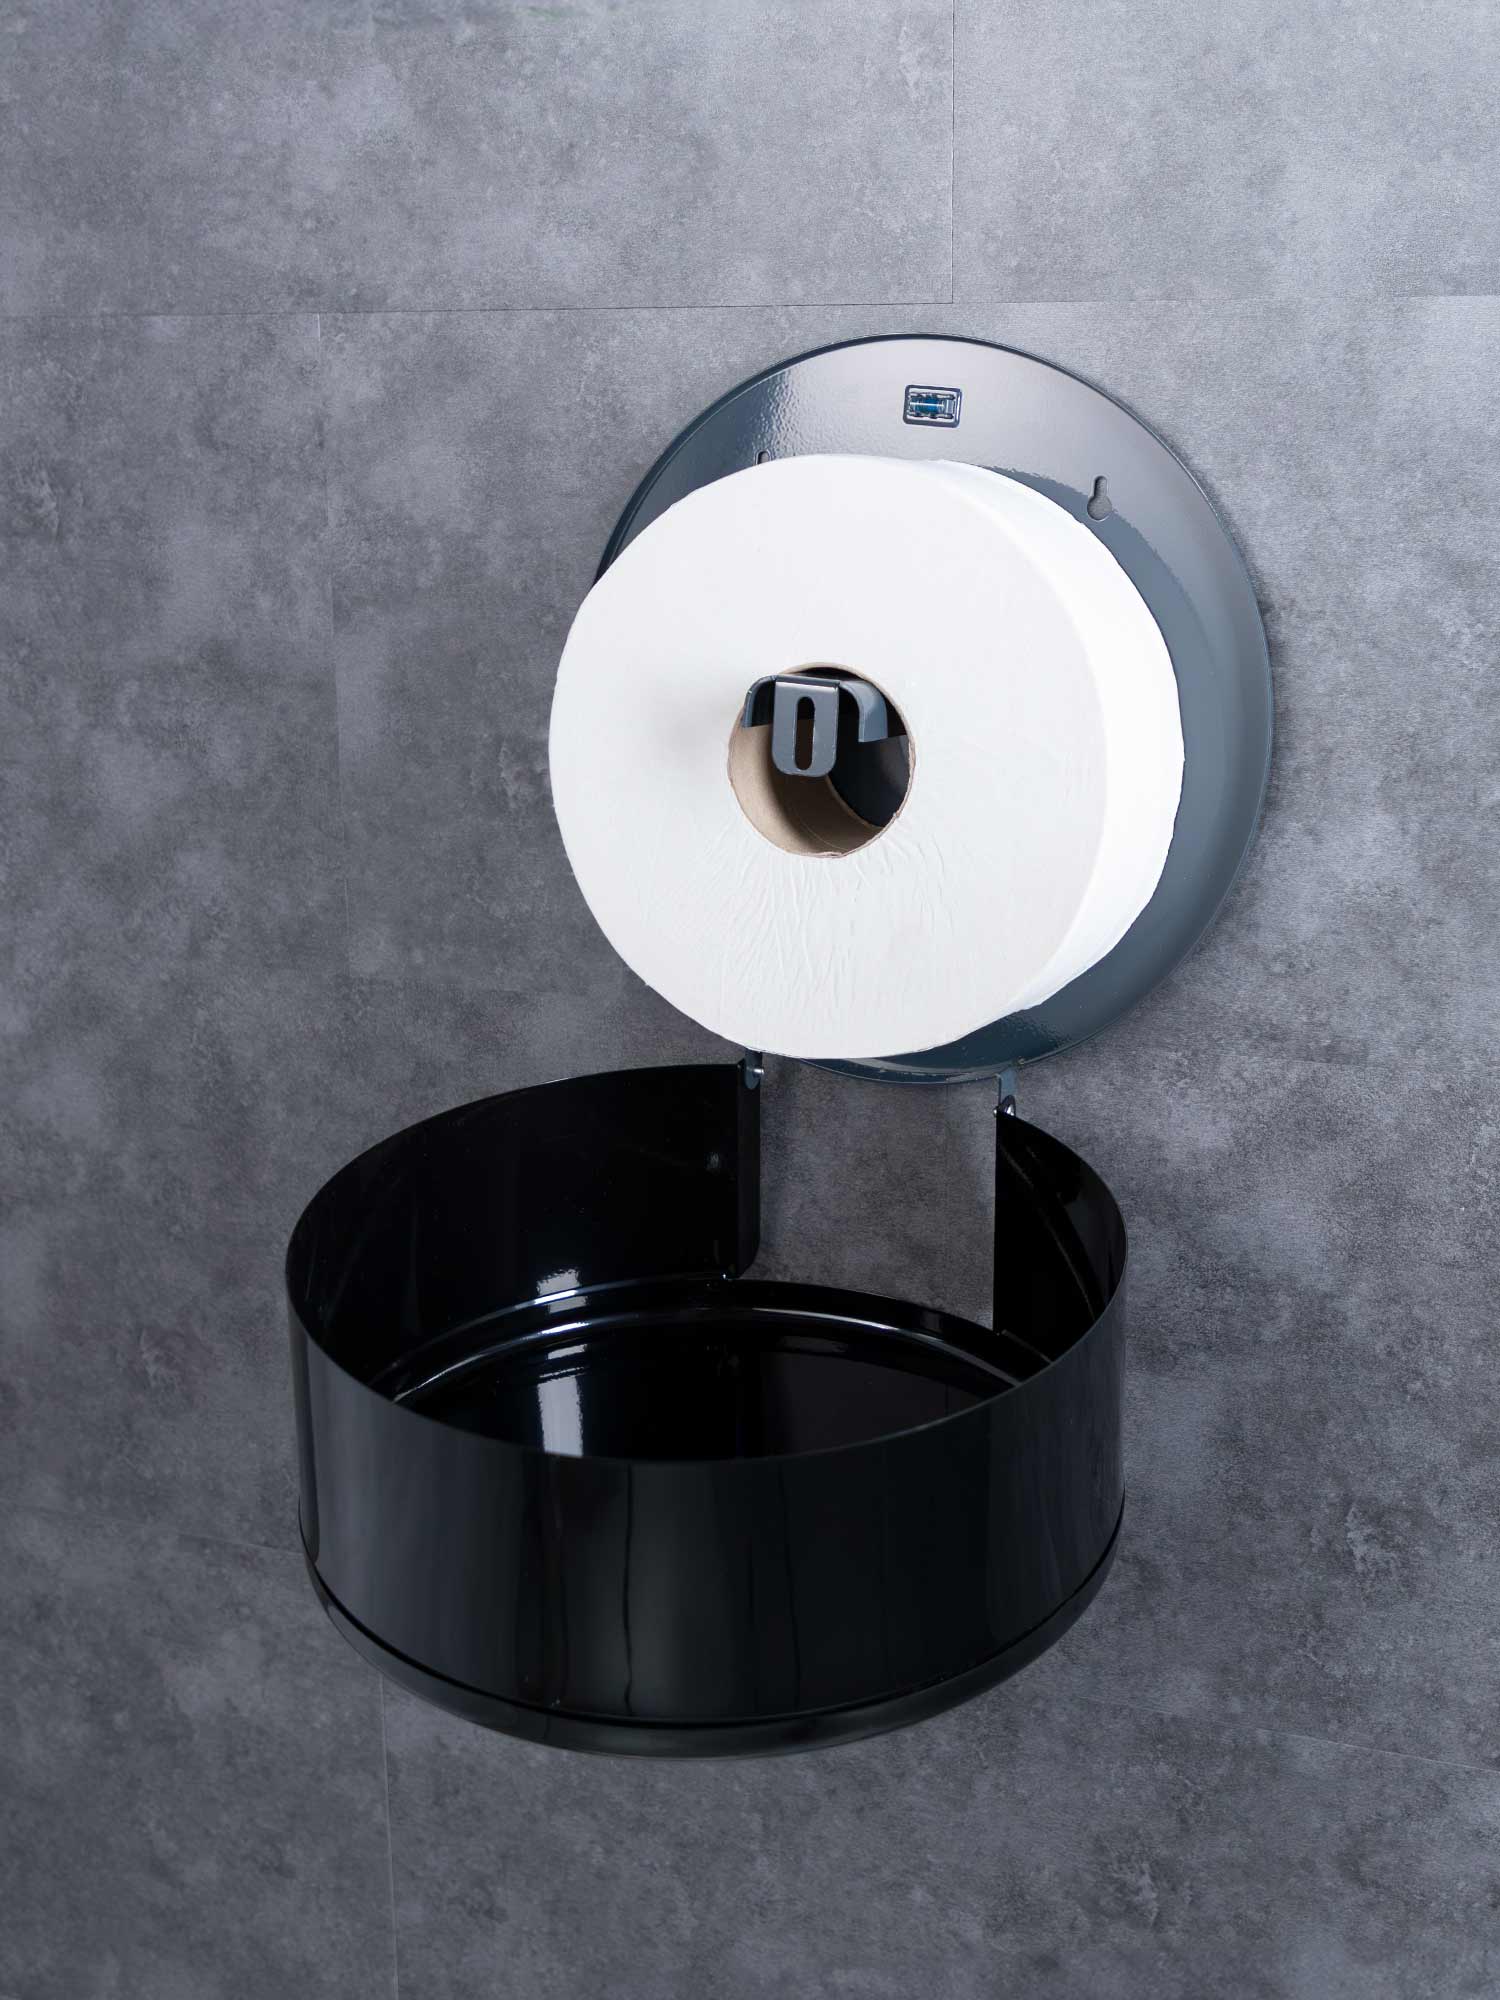 12 inch black toilet roll dispenser